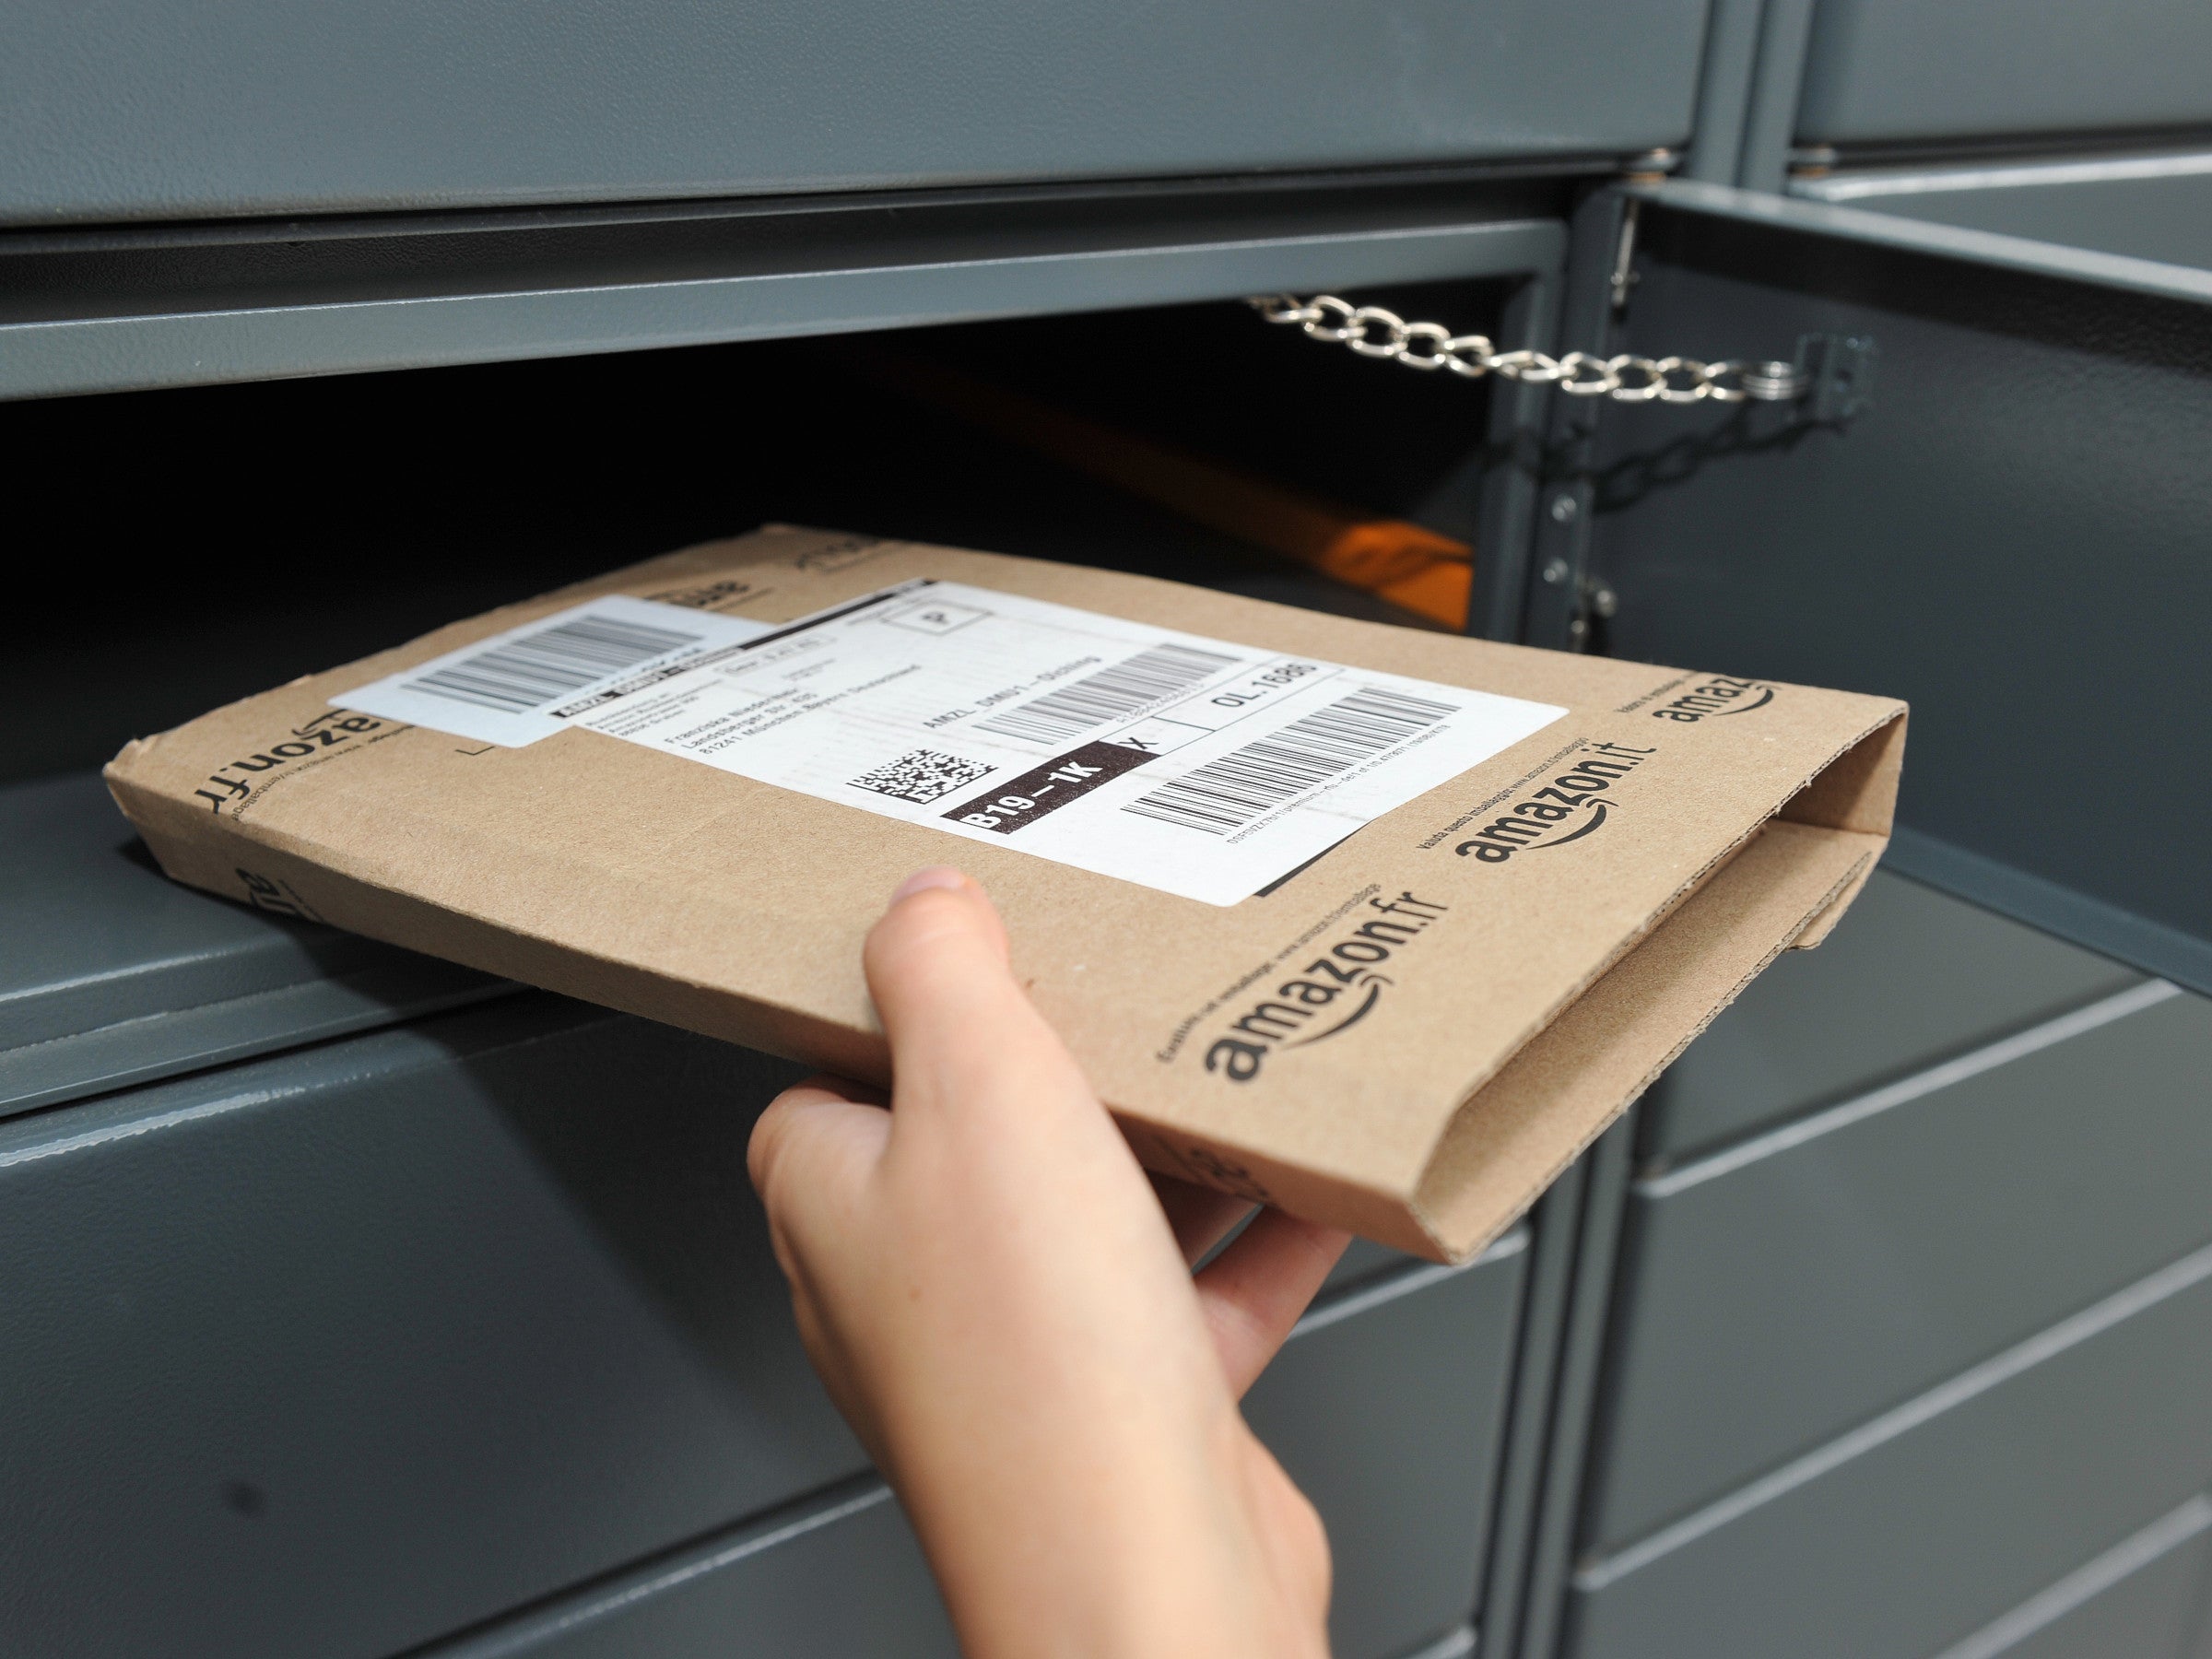 #Neuer Amazon-Betrug: Nutzer erhalten Bestellung & werden verklagt